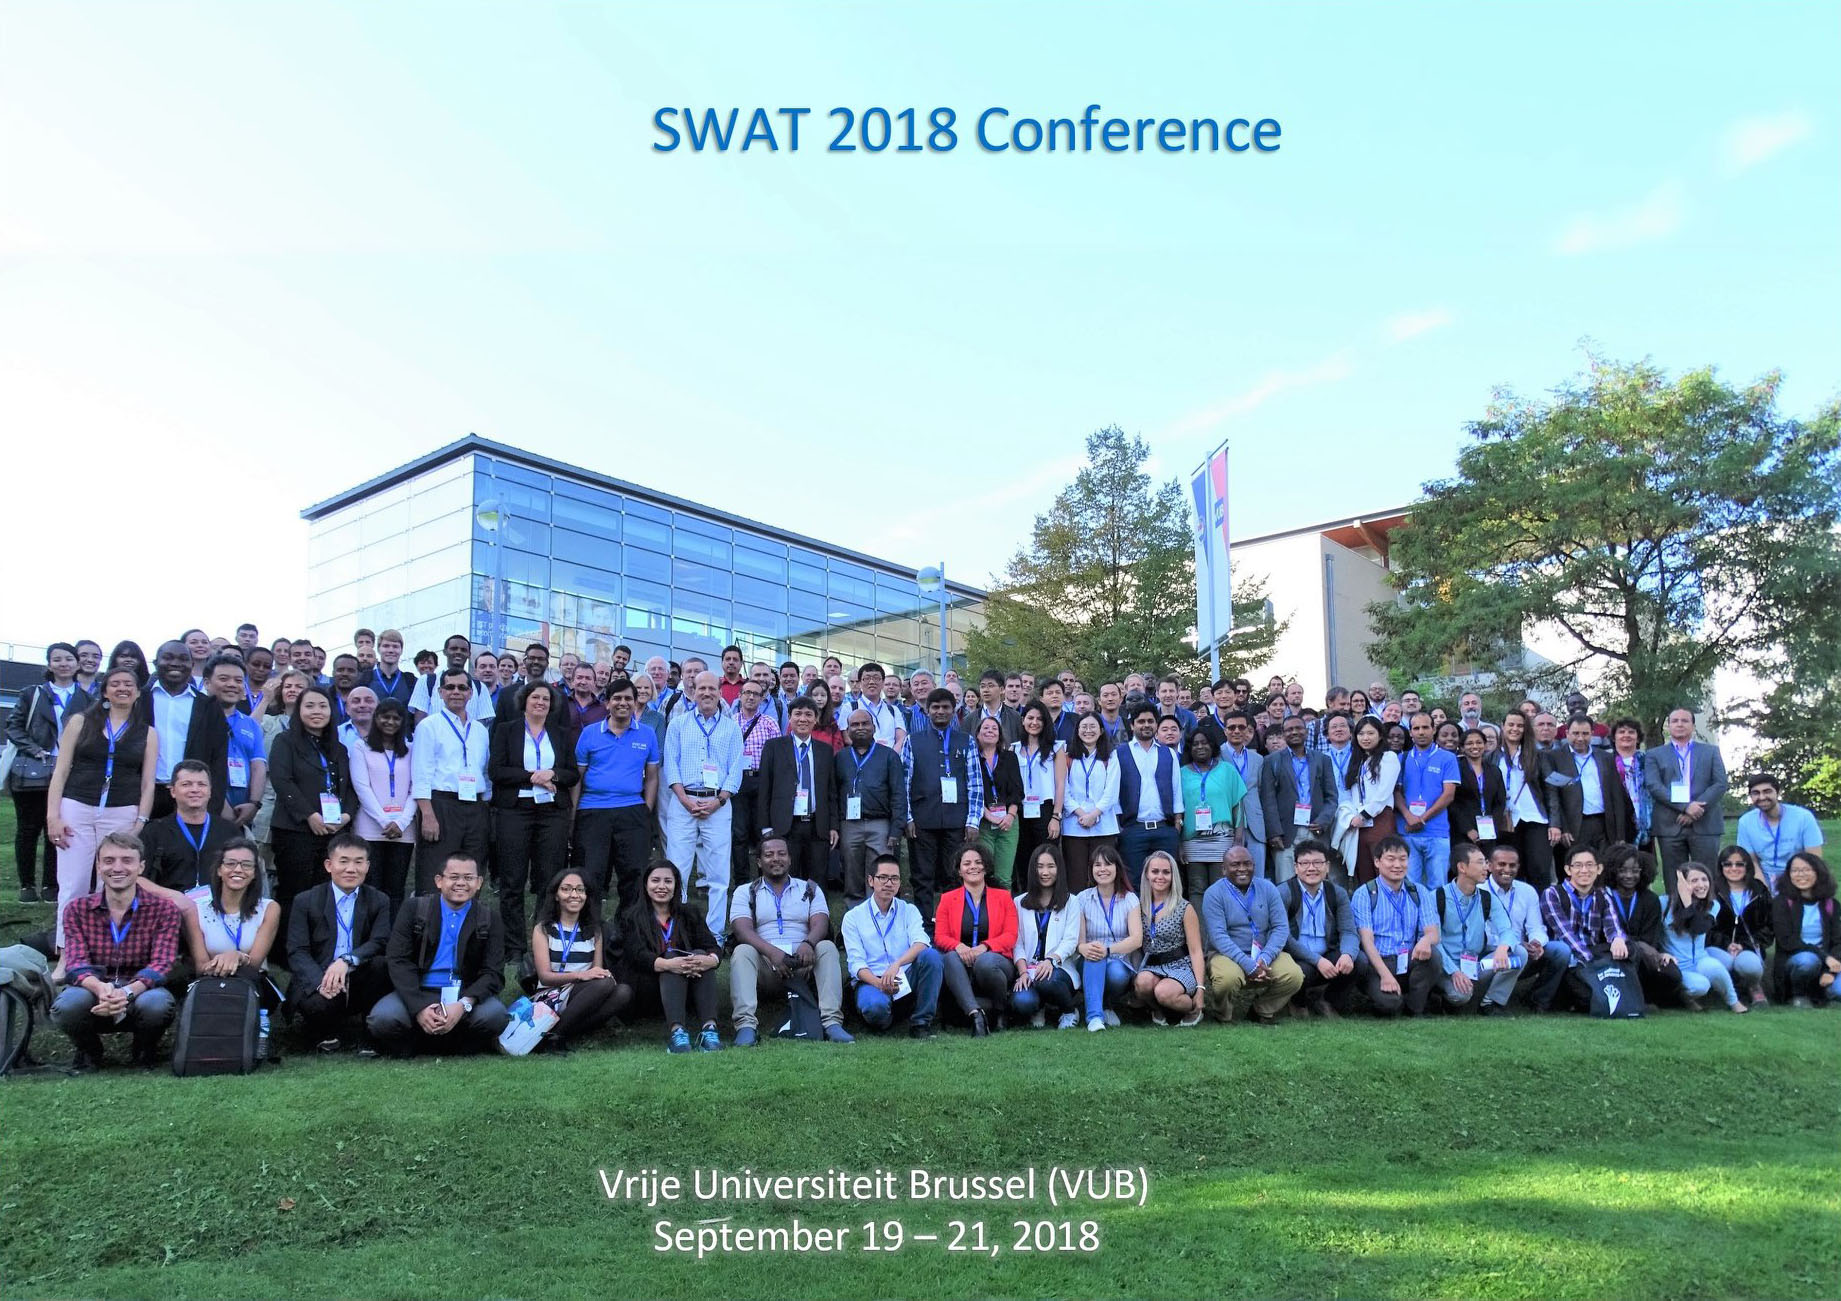 SWAT2018-Brussels-Group-Photo.jpg